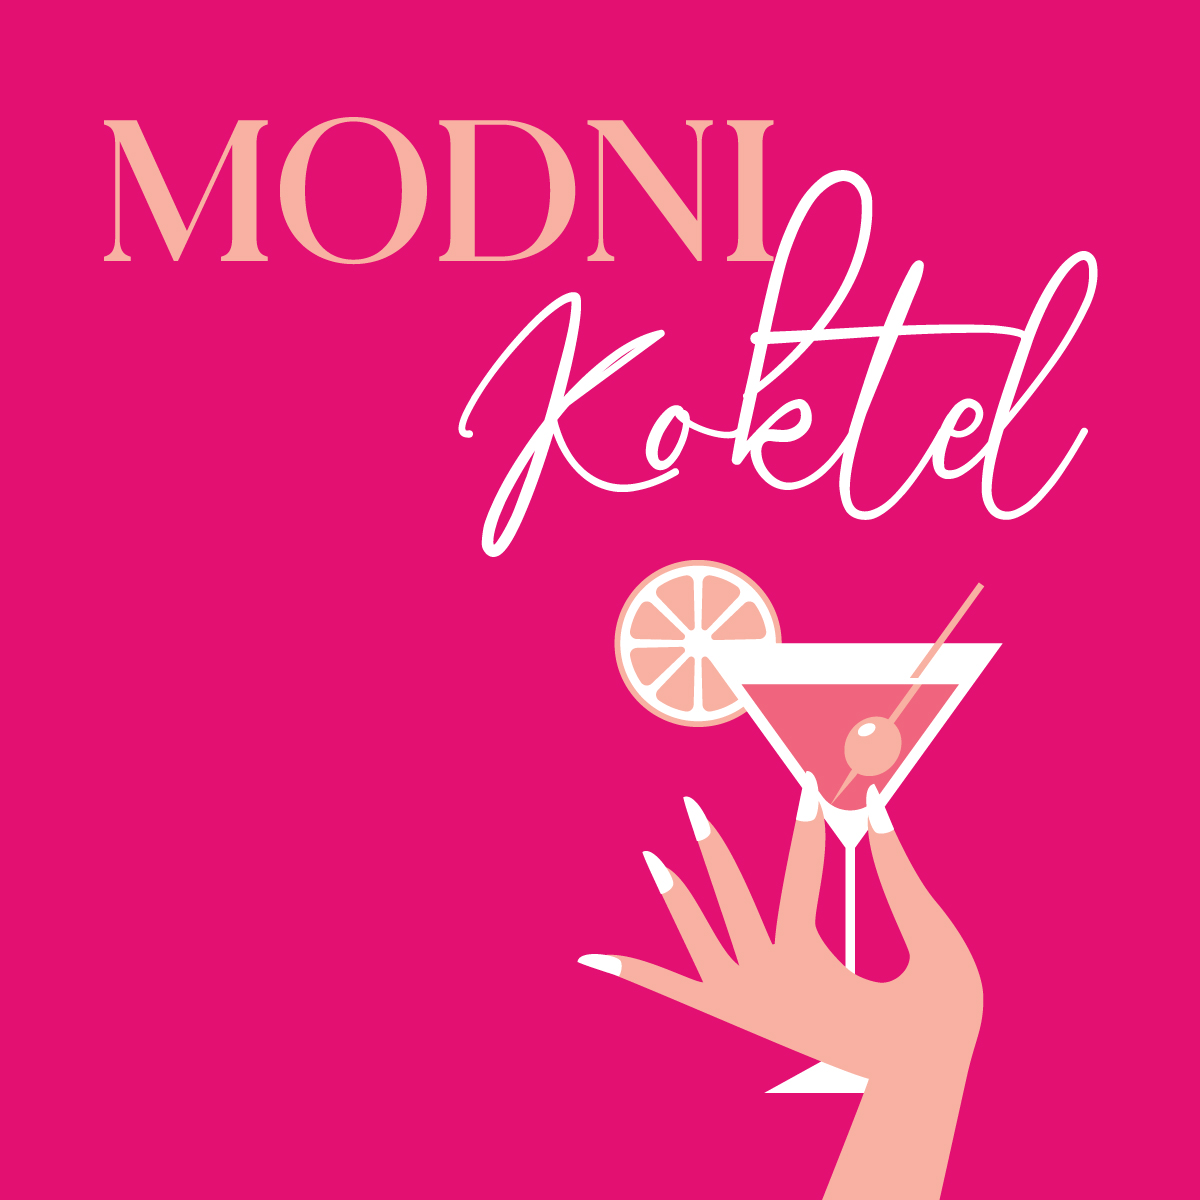 Modni-Koktel-objava-1200-clean